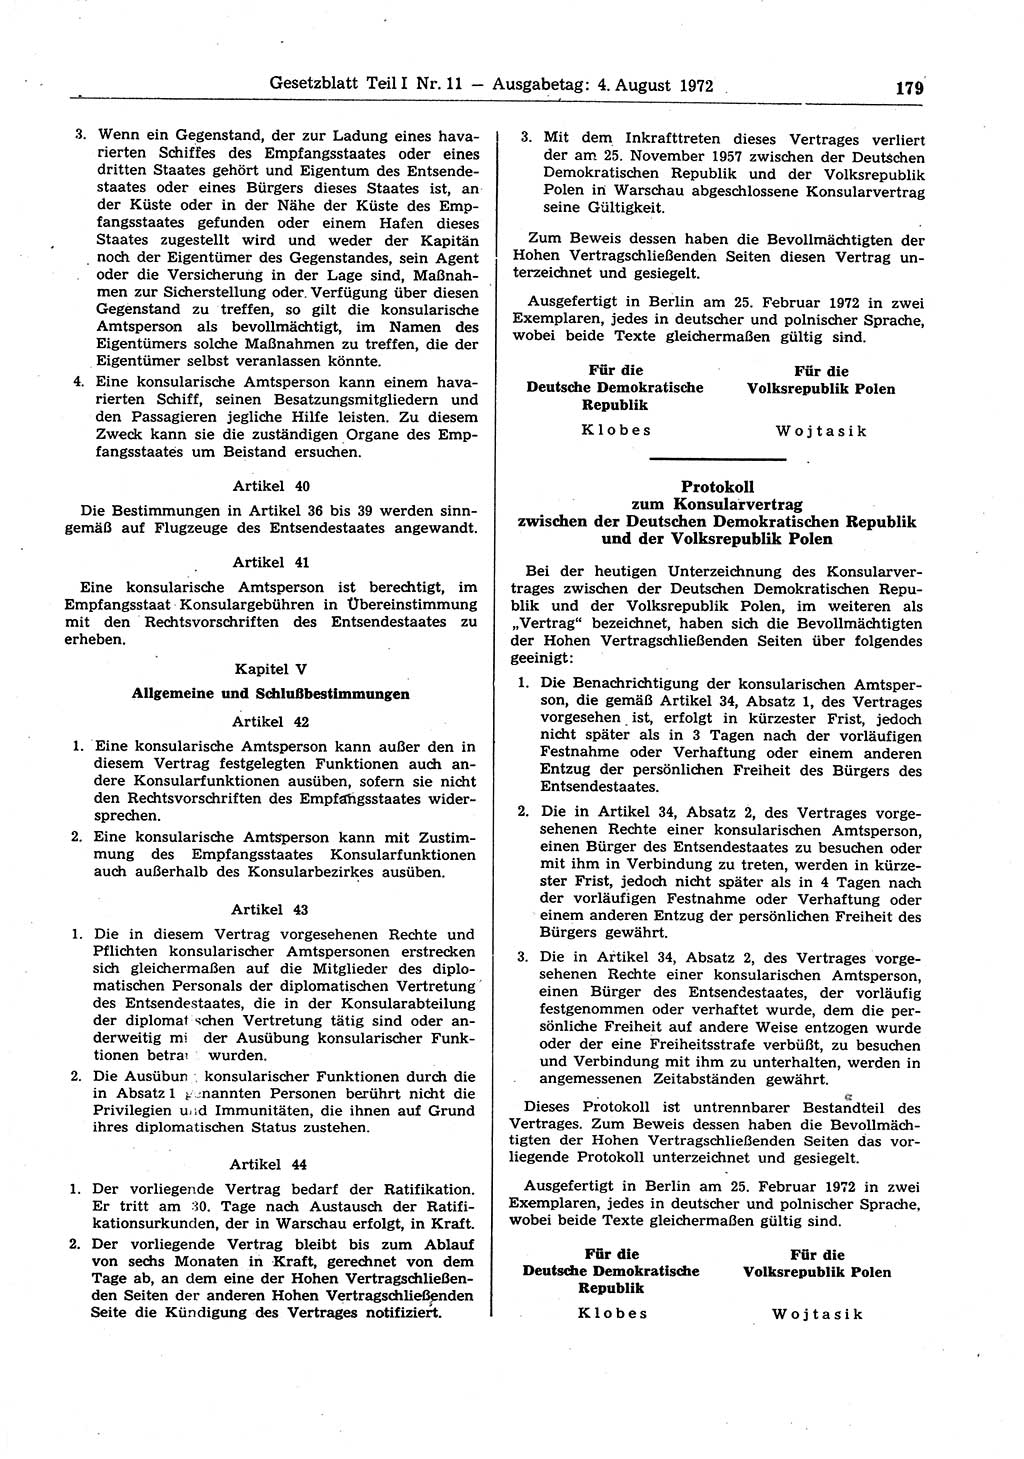 Gesetzblatt (GBl.) der Deutschen Demokratischen Republik (DDR) Teil Ⅰ 1972, Seite 179 (GBl. DDR Ⅰ 1972, S. 179)